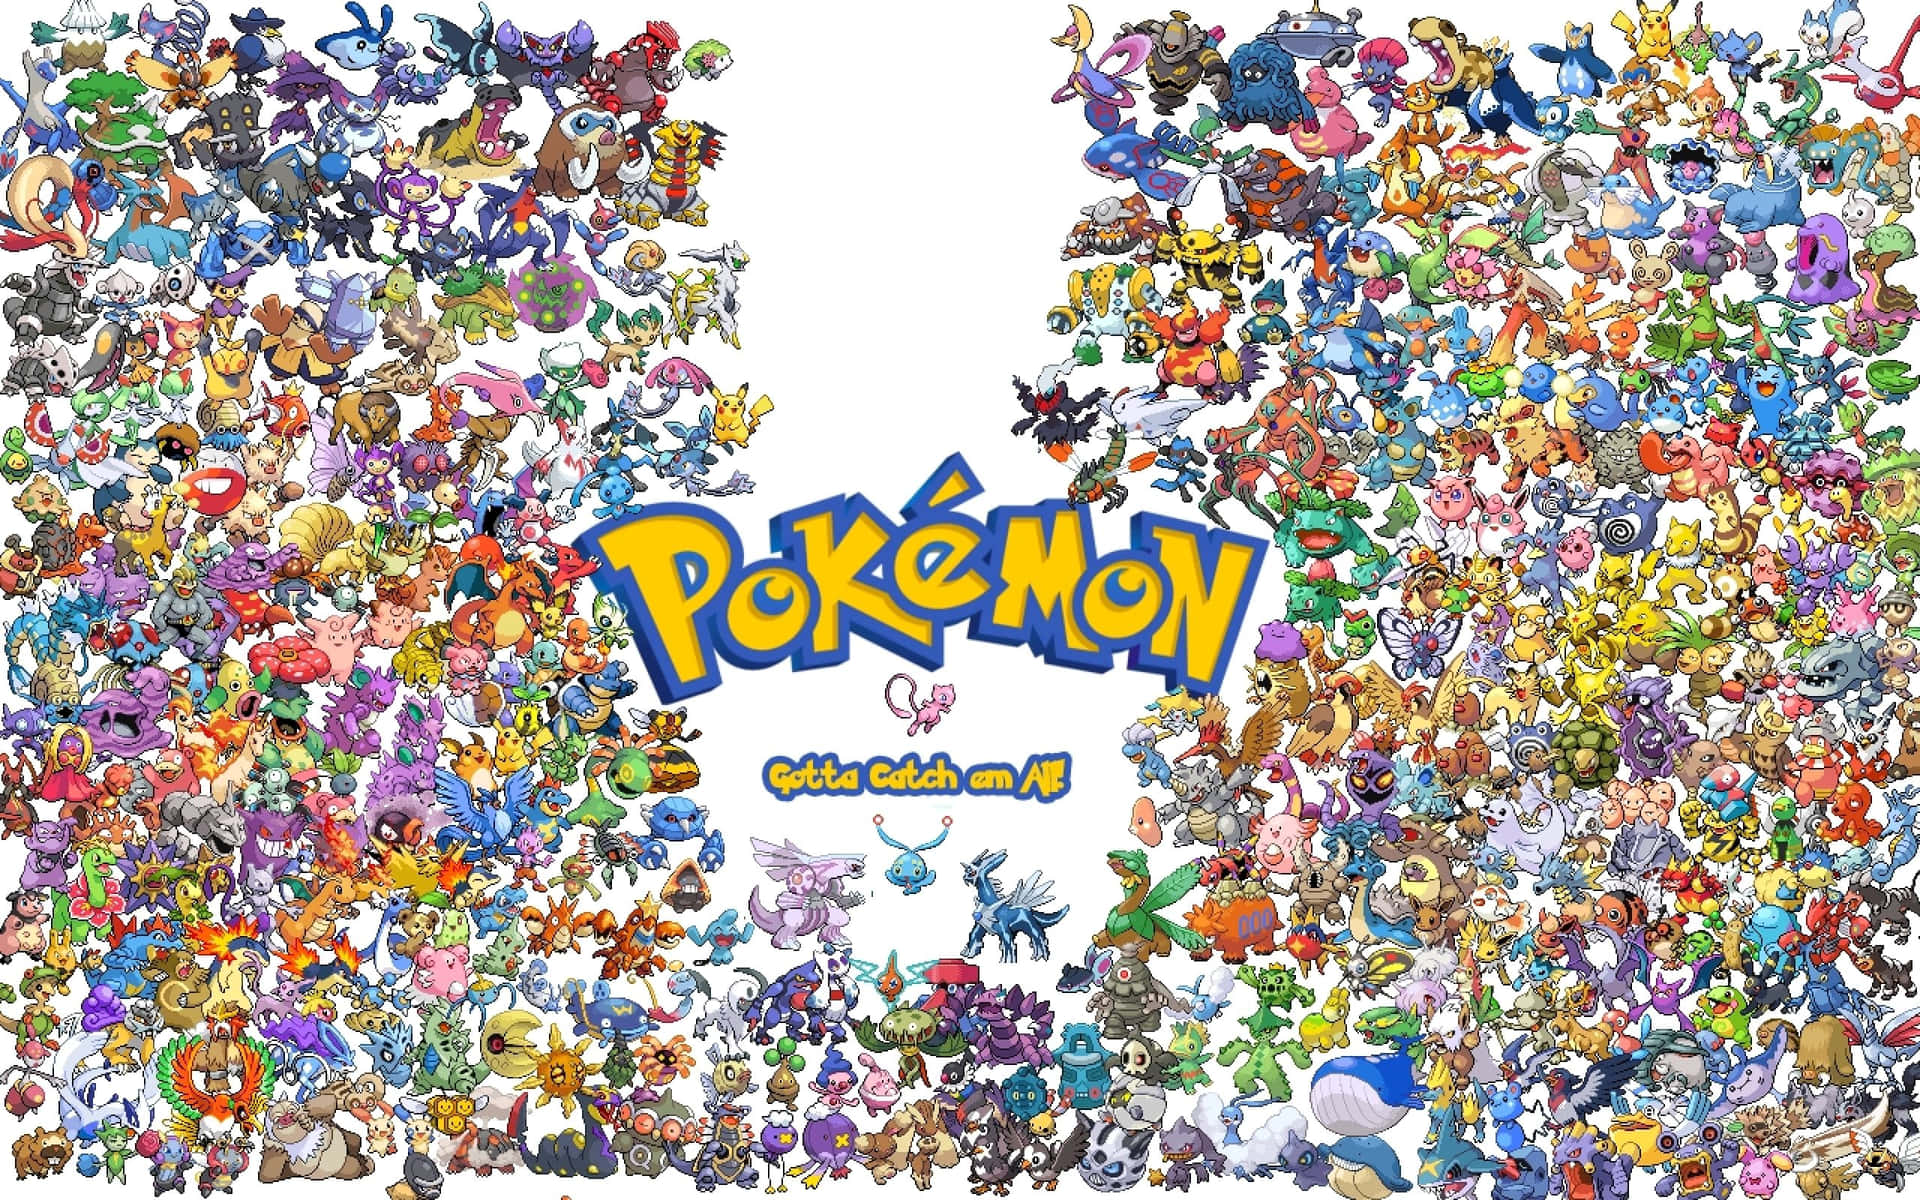 ¡todostus Pokémon Favoritos En Un Solo Lugar!